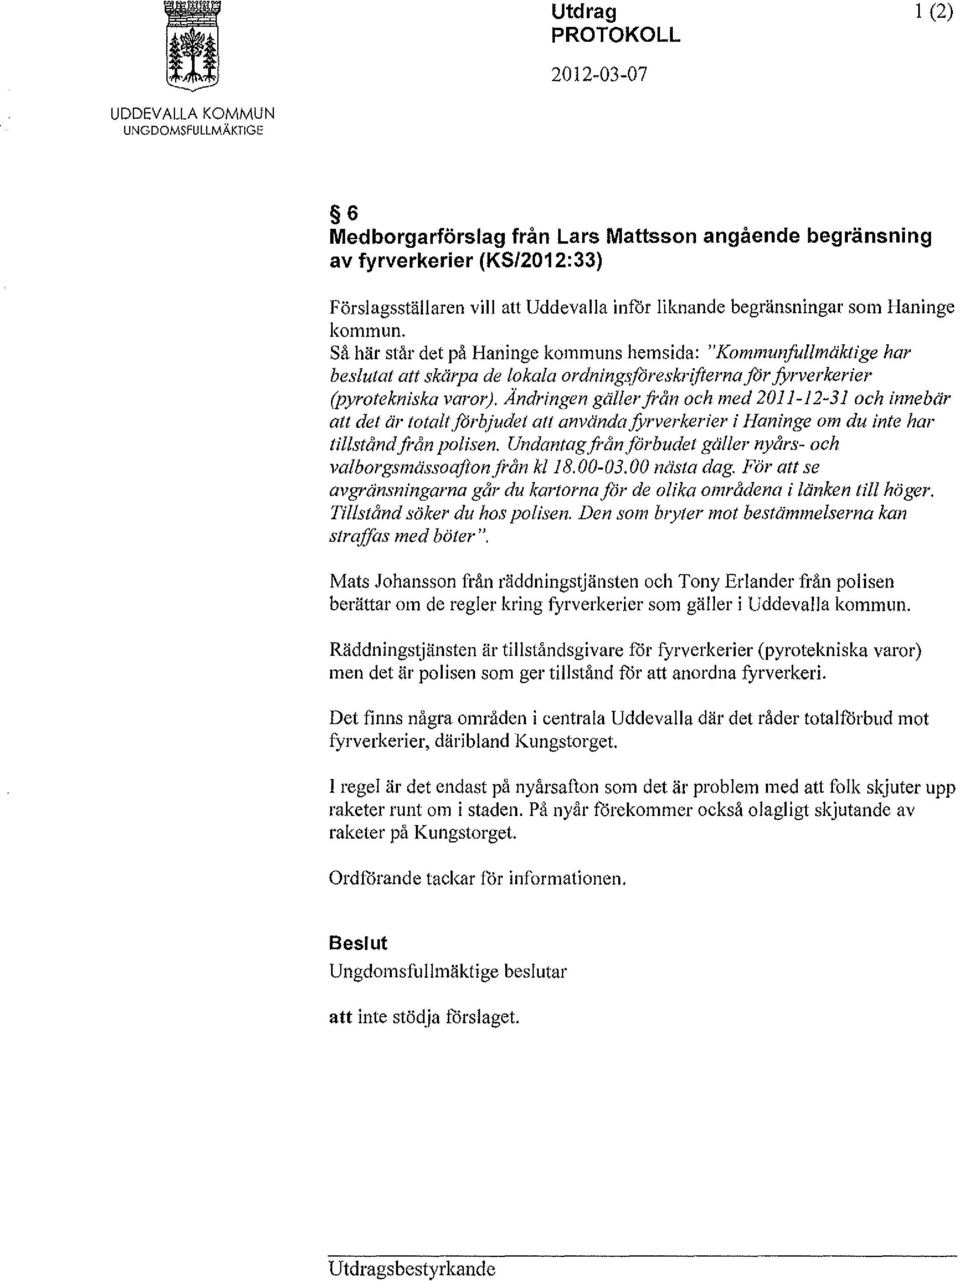 Såhär står det på Haninge kommuns hemsida: "Kommunfullmäktige har beslutat att skärpa de lokala ordningsföreskrifterna for fyrverkerier (pyrotekniska varor).